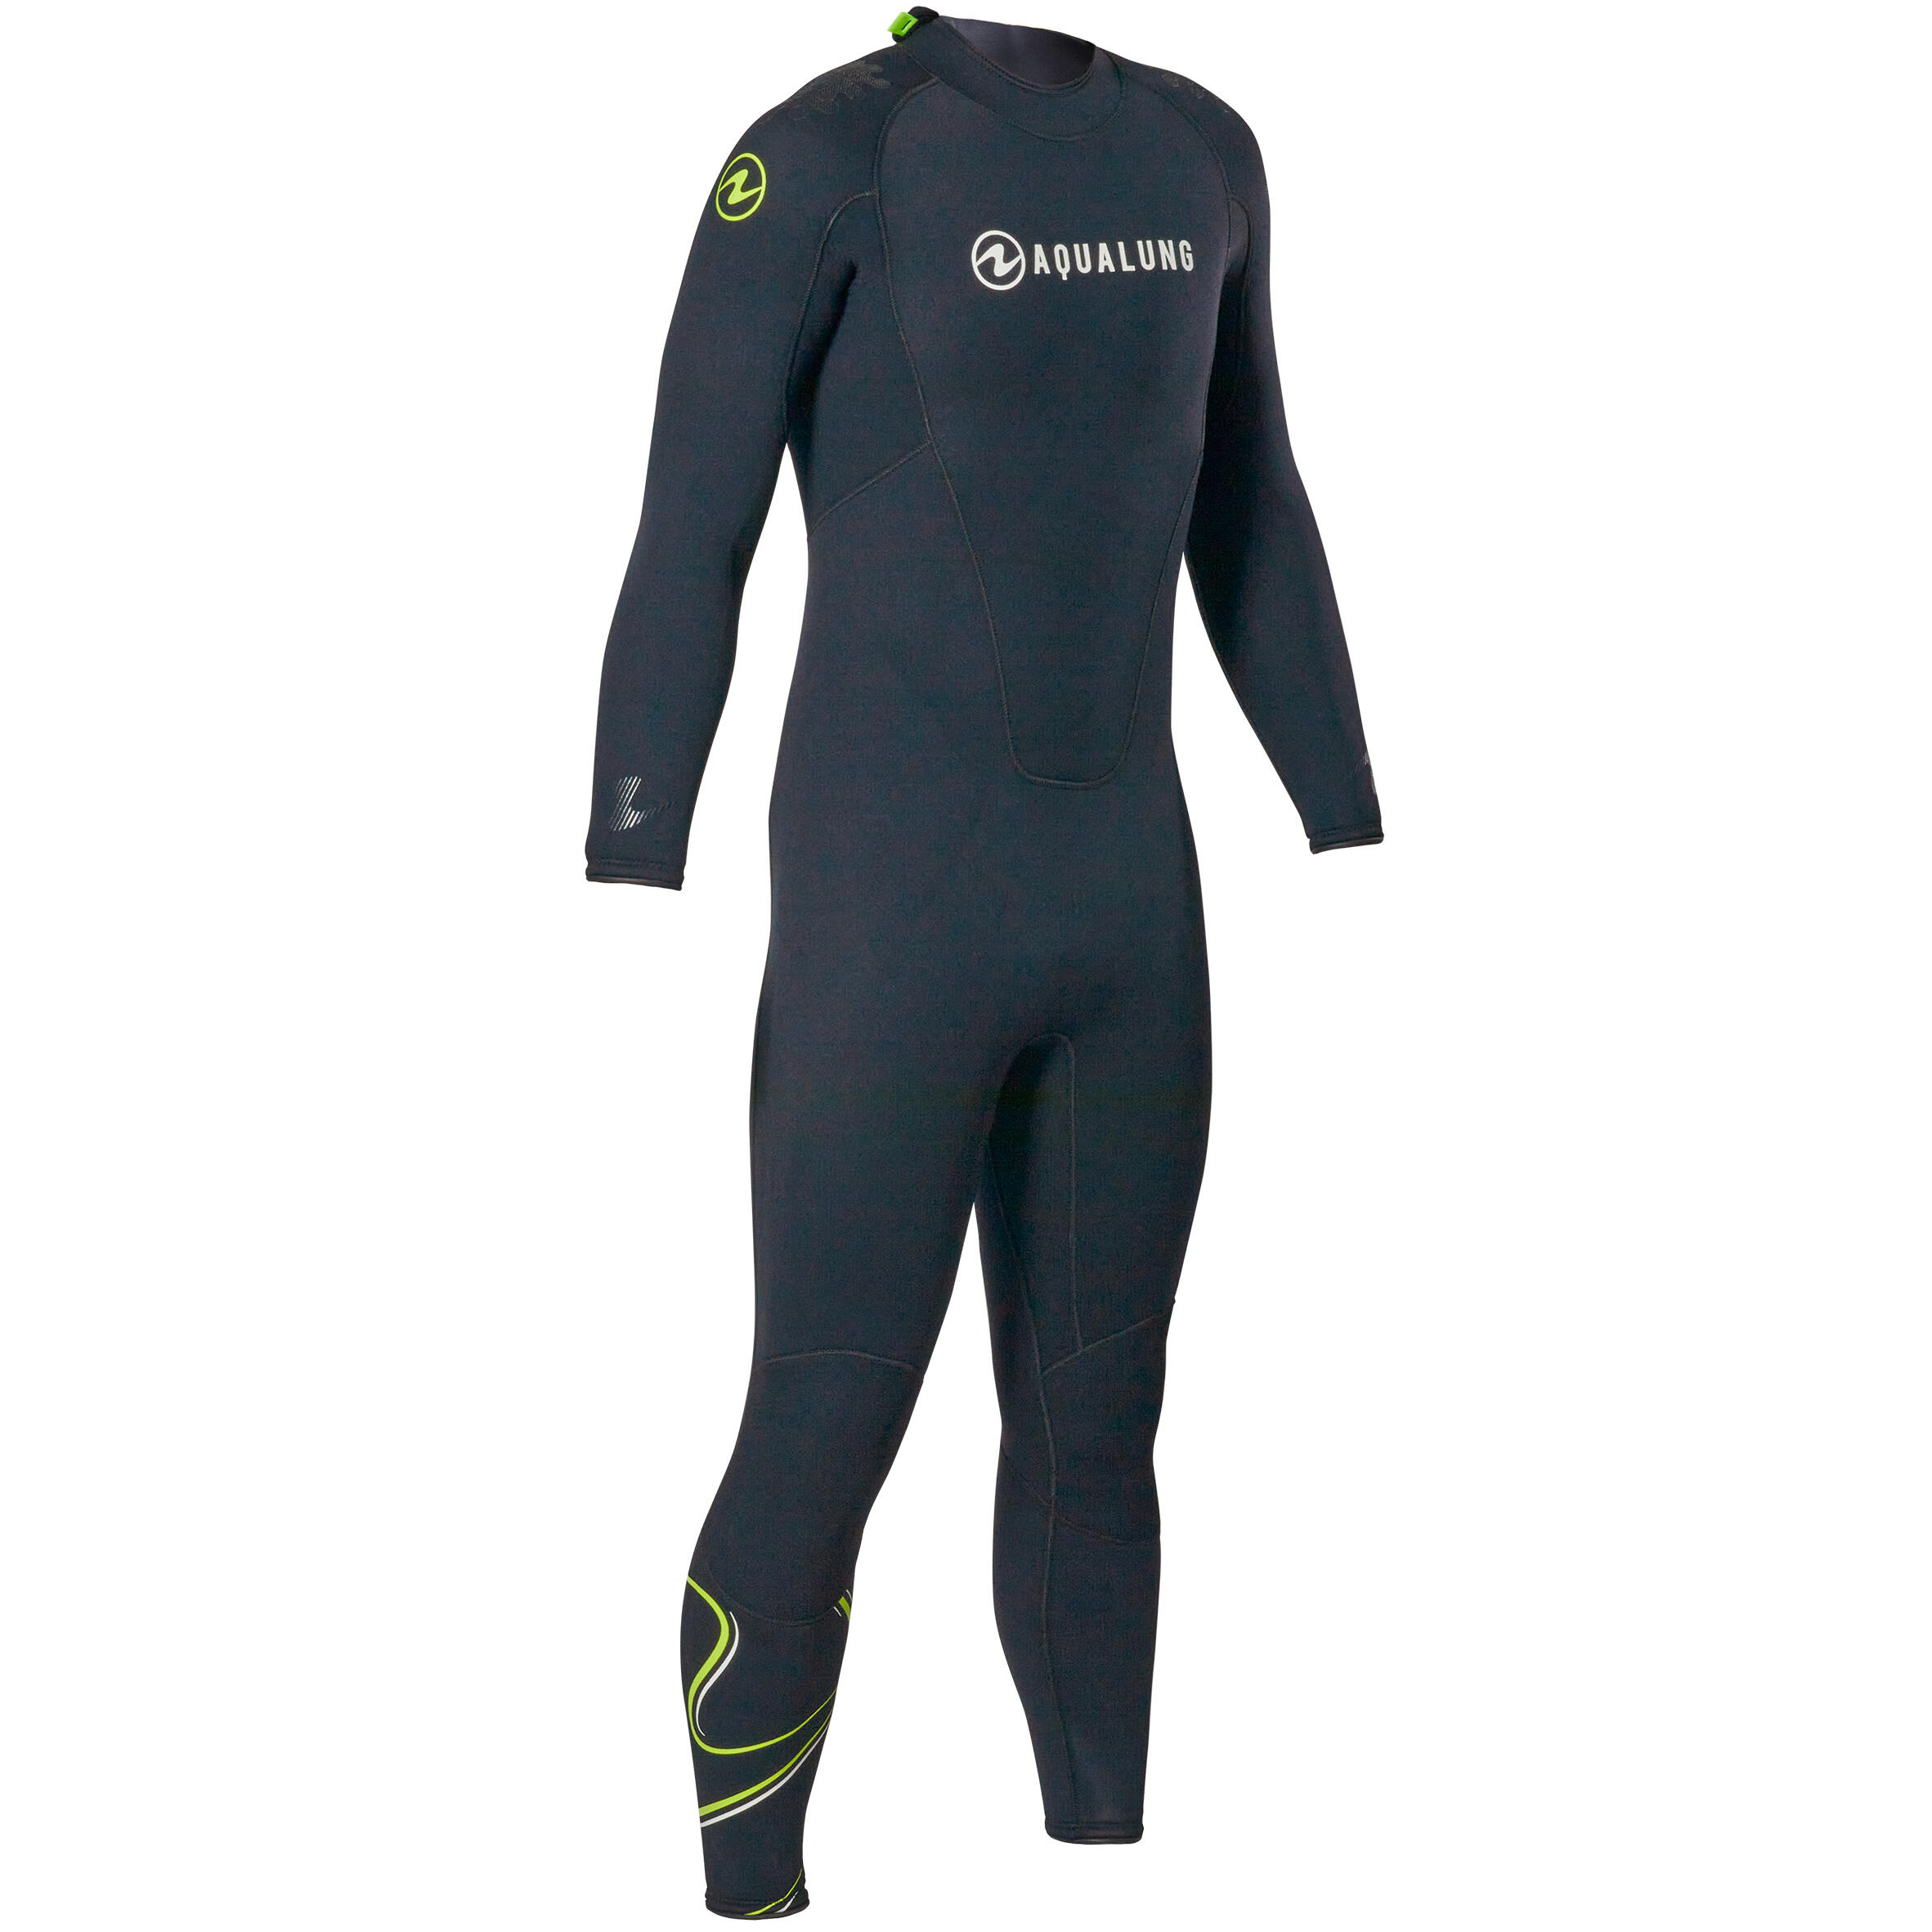 Men's diving wetsuit 5.5 mm neoprene Aqualung - WAVE Black/Yellow 8/8